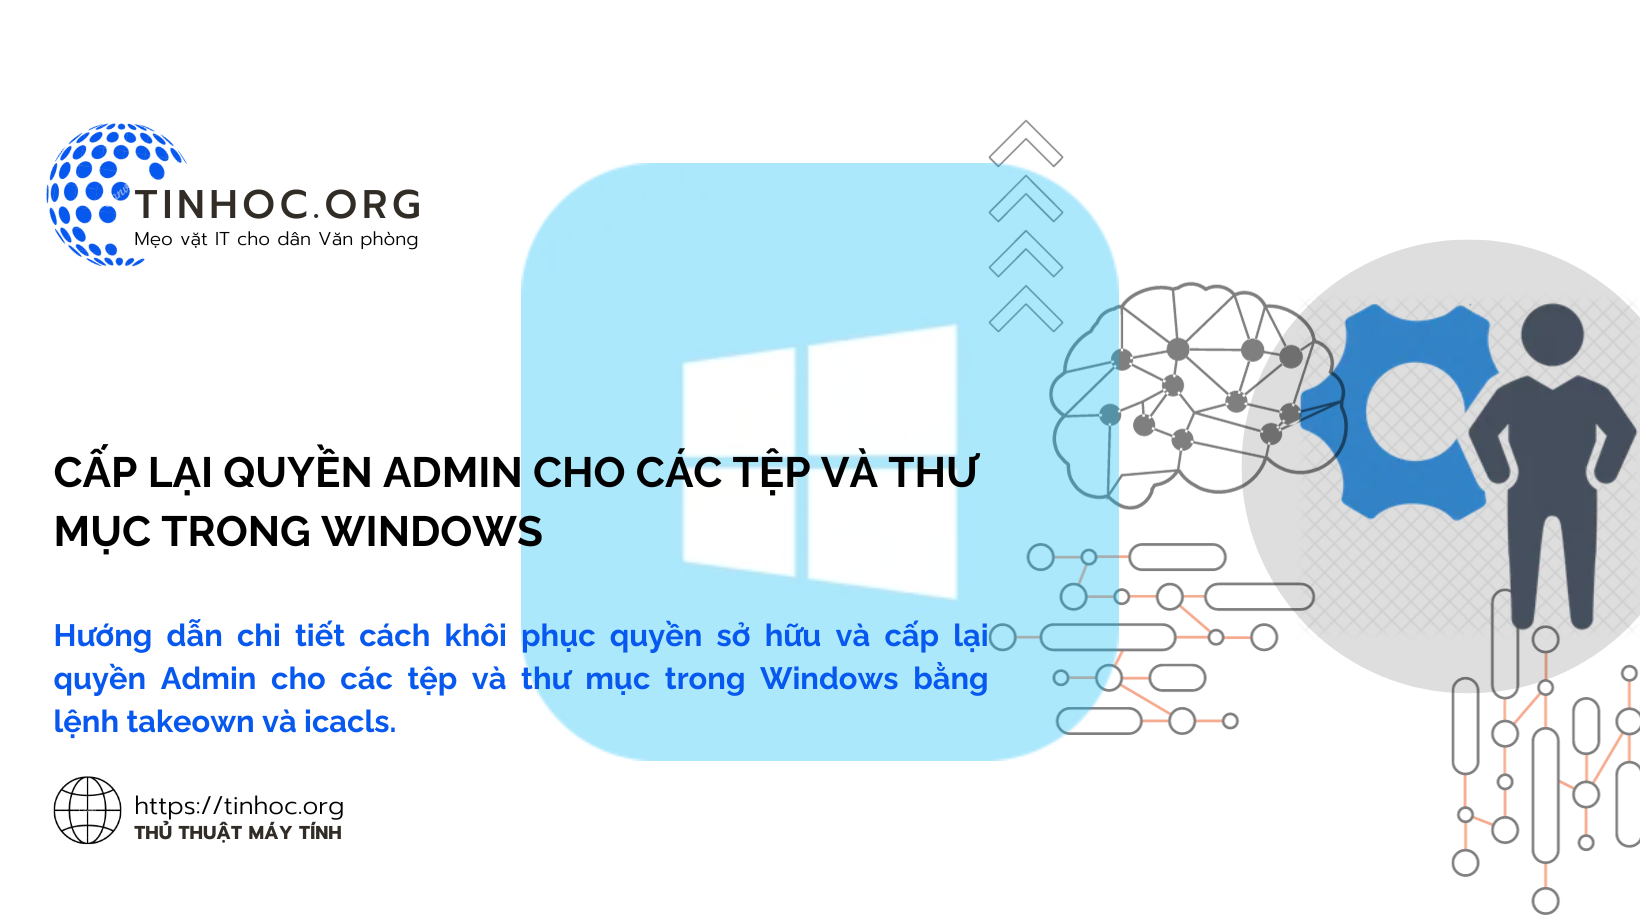 Hướng dẫn chi tiết cách khôi phục quyền sở hữu và cấp lại quyền Admin cho các tệp và thư mục trong Windows bằng lệnh takeown và icacls.